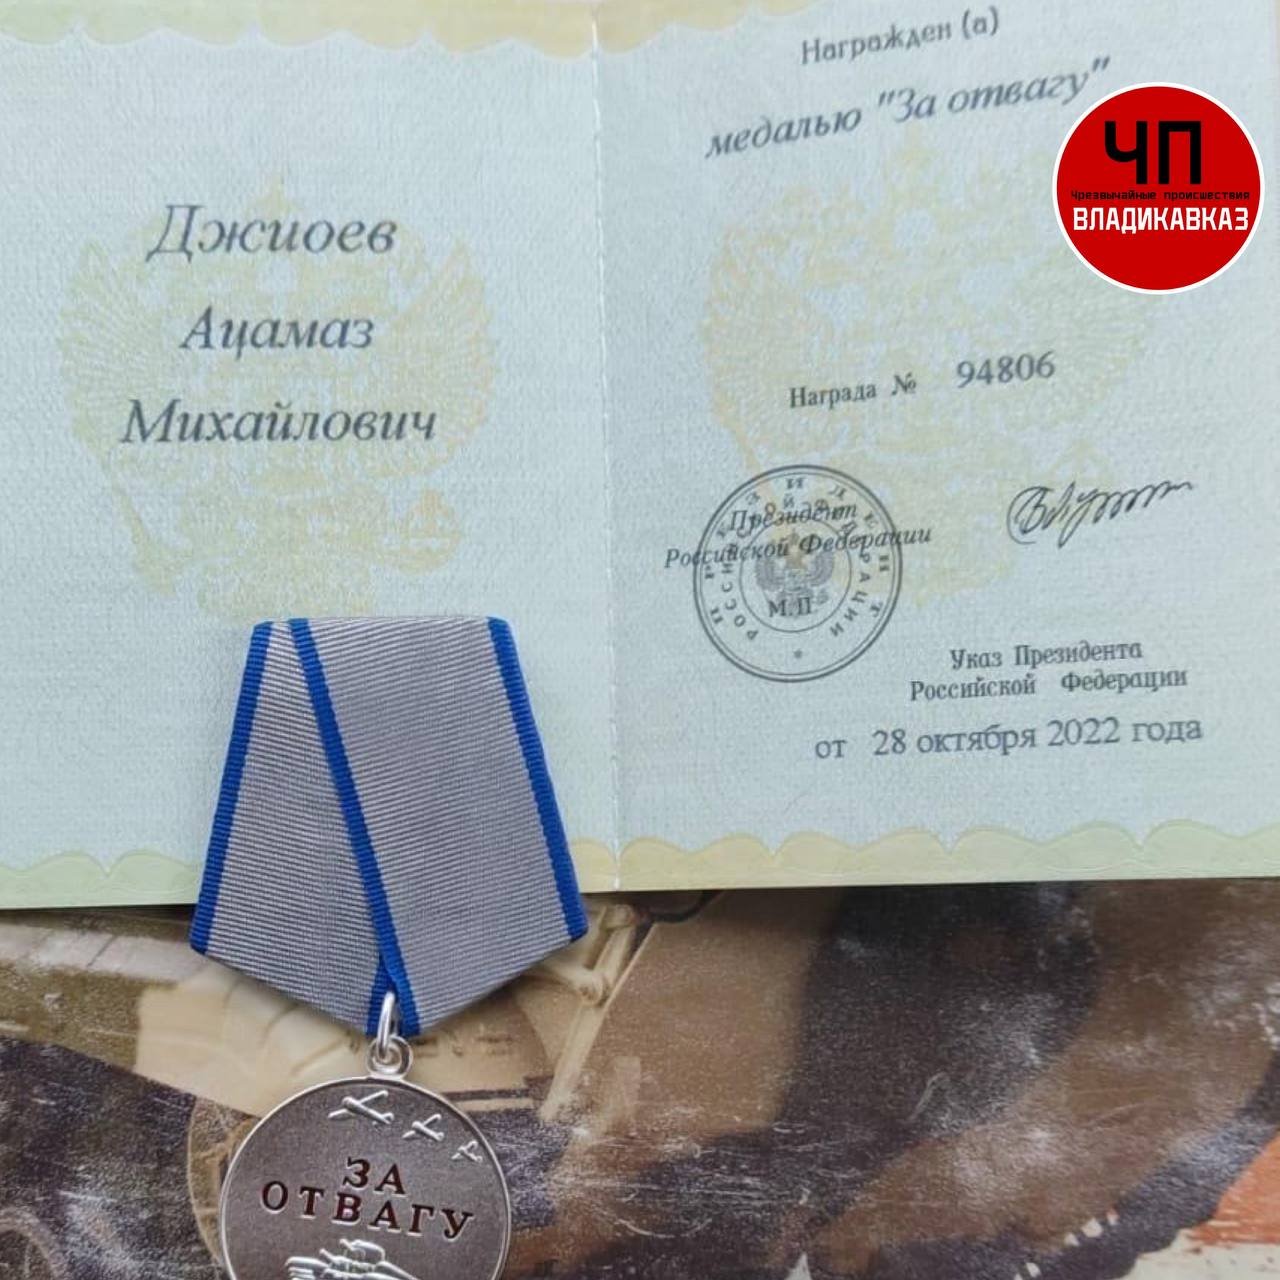 Джиоев Ацамаз Михайлович награжден медалью 